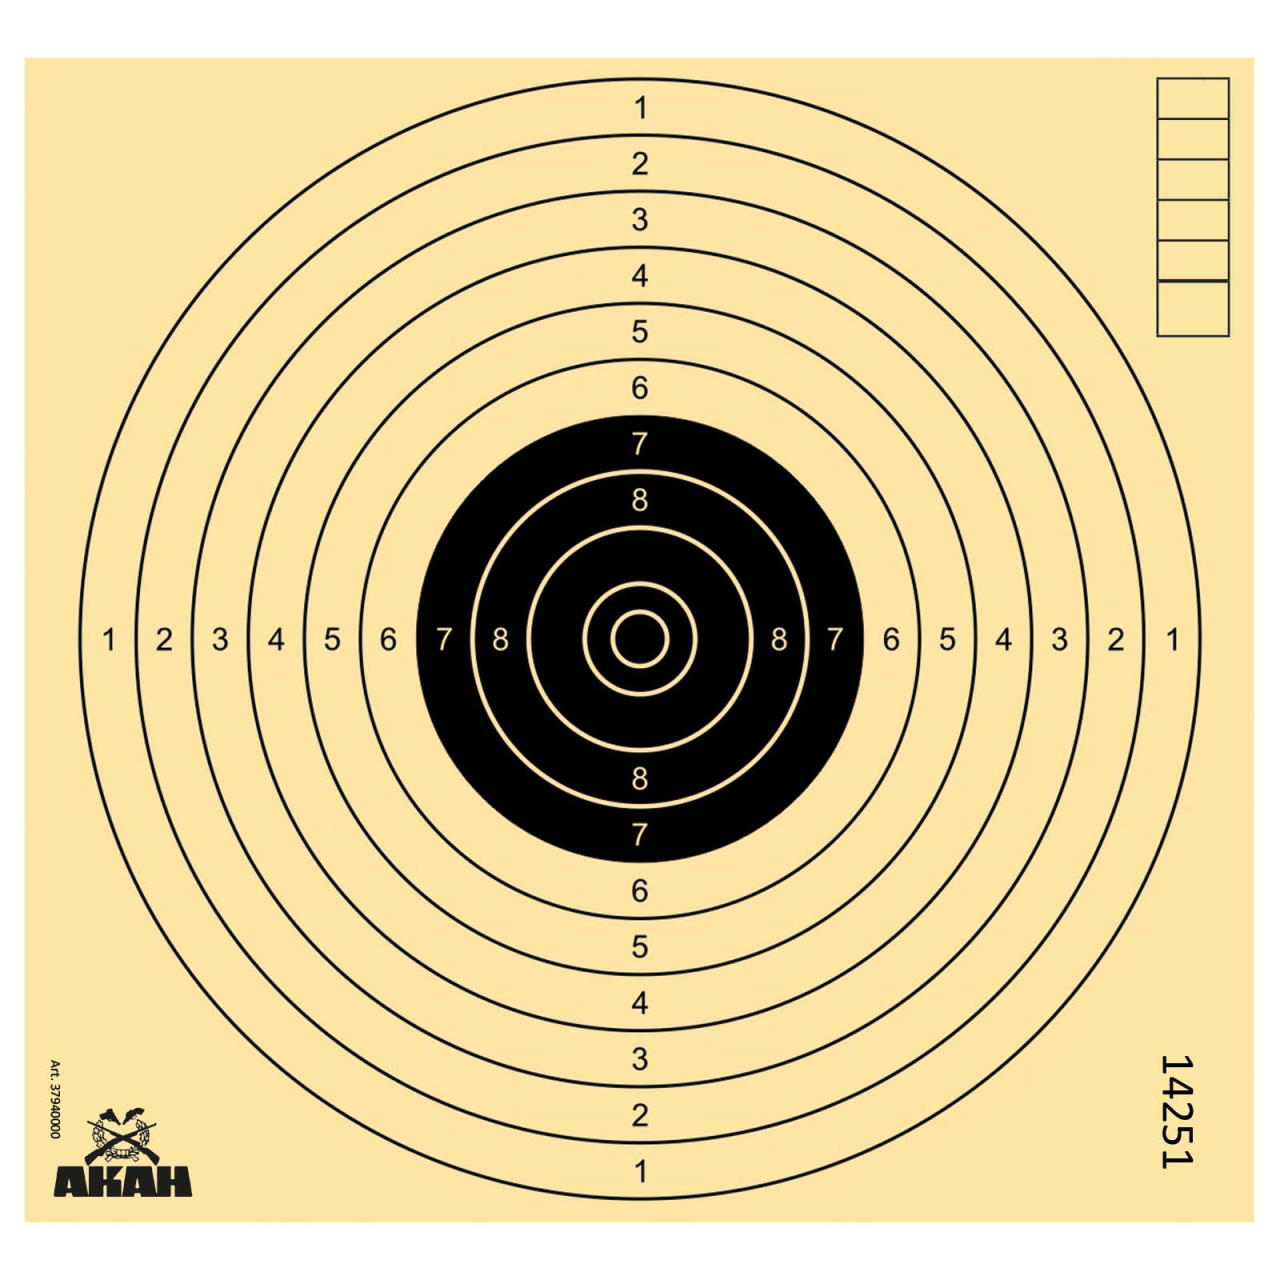 Zielscheibe, Spowag, Luftpistole, 17X17cm, 250 Stk